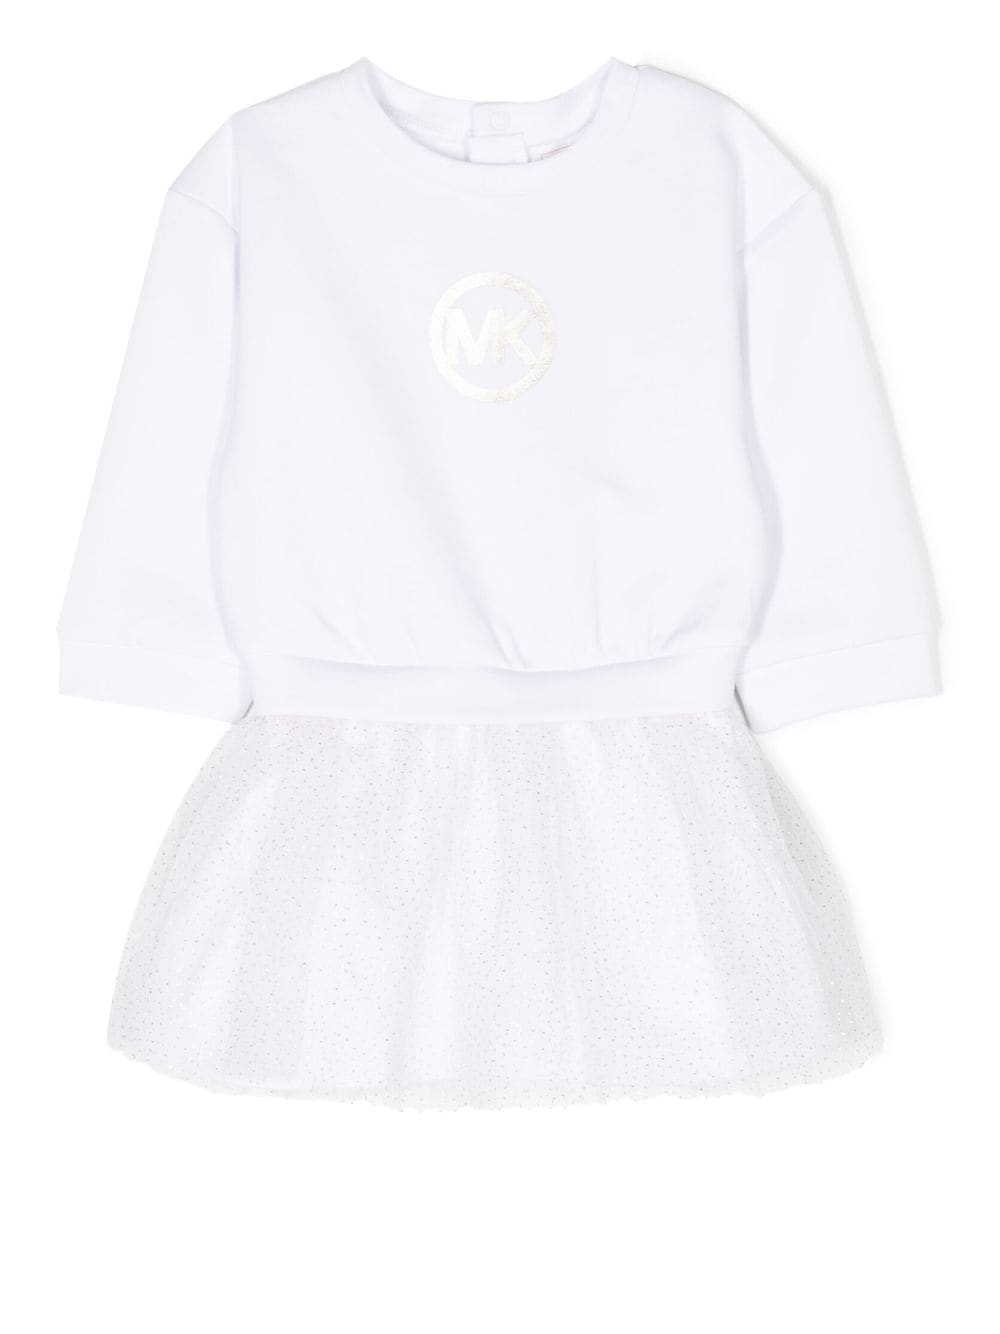 Michael Kors Kids logo-print cotton dress - White